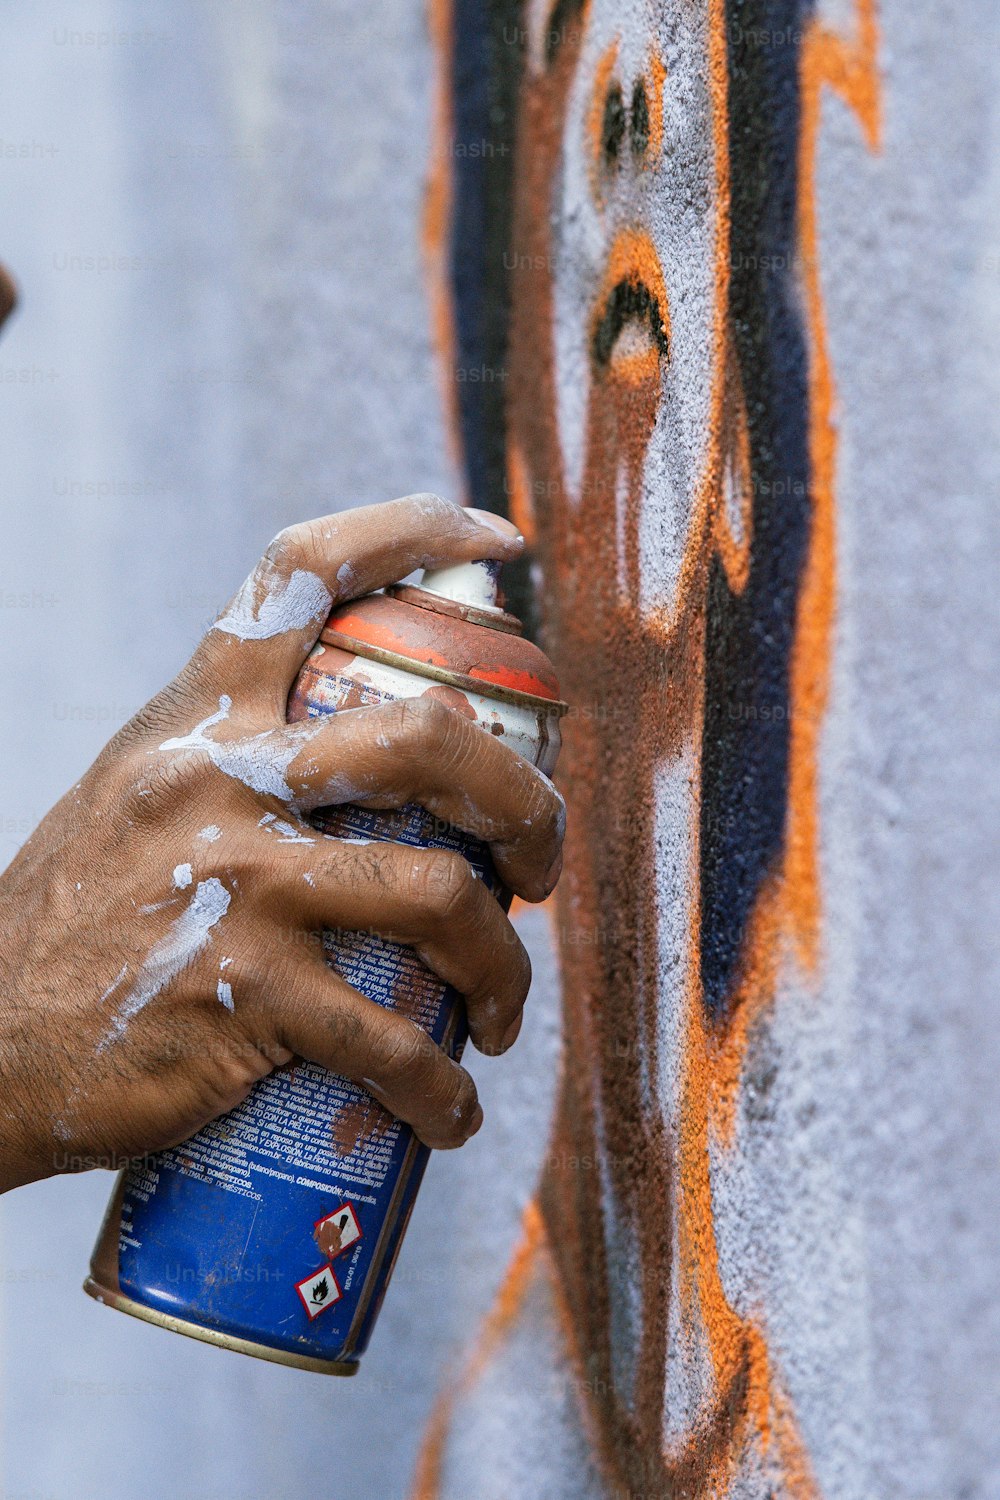 Eine Person, die eine Wand mit Graffiti besprüht